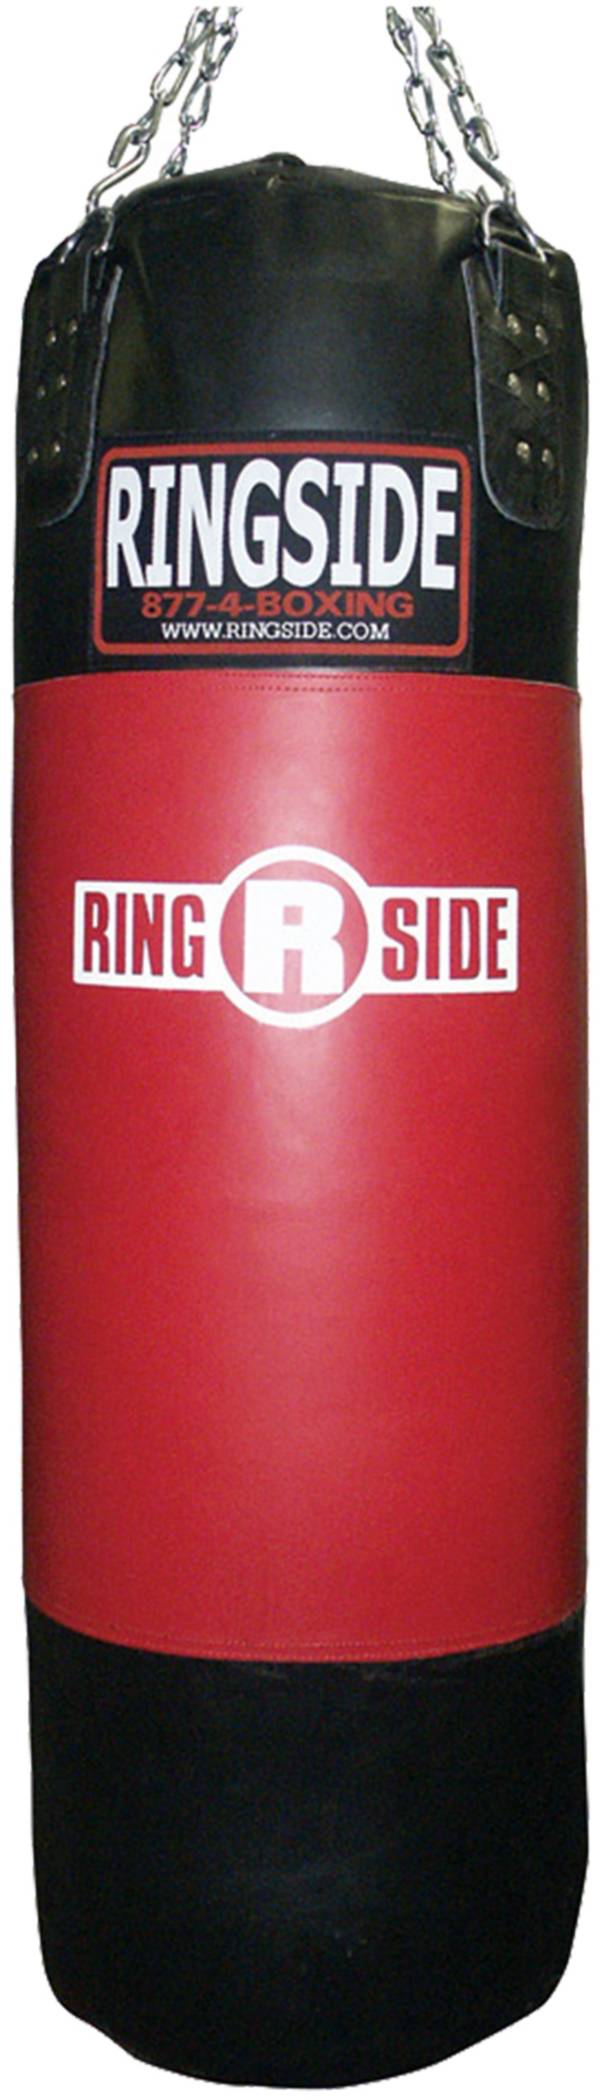 Ringside 150 lb. Powerhide Soft Filled Bag product image